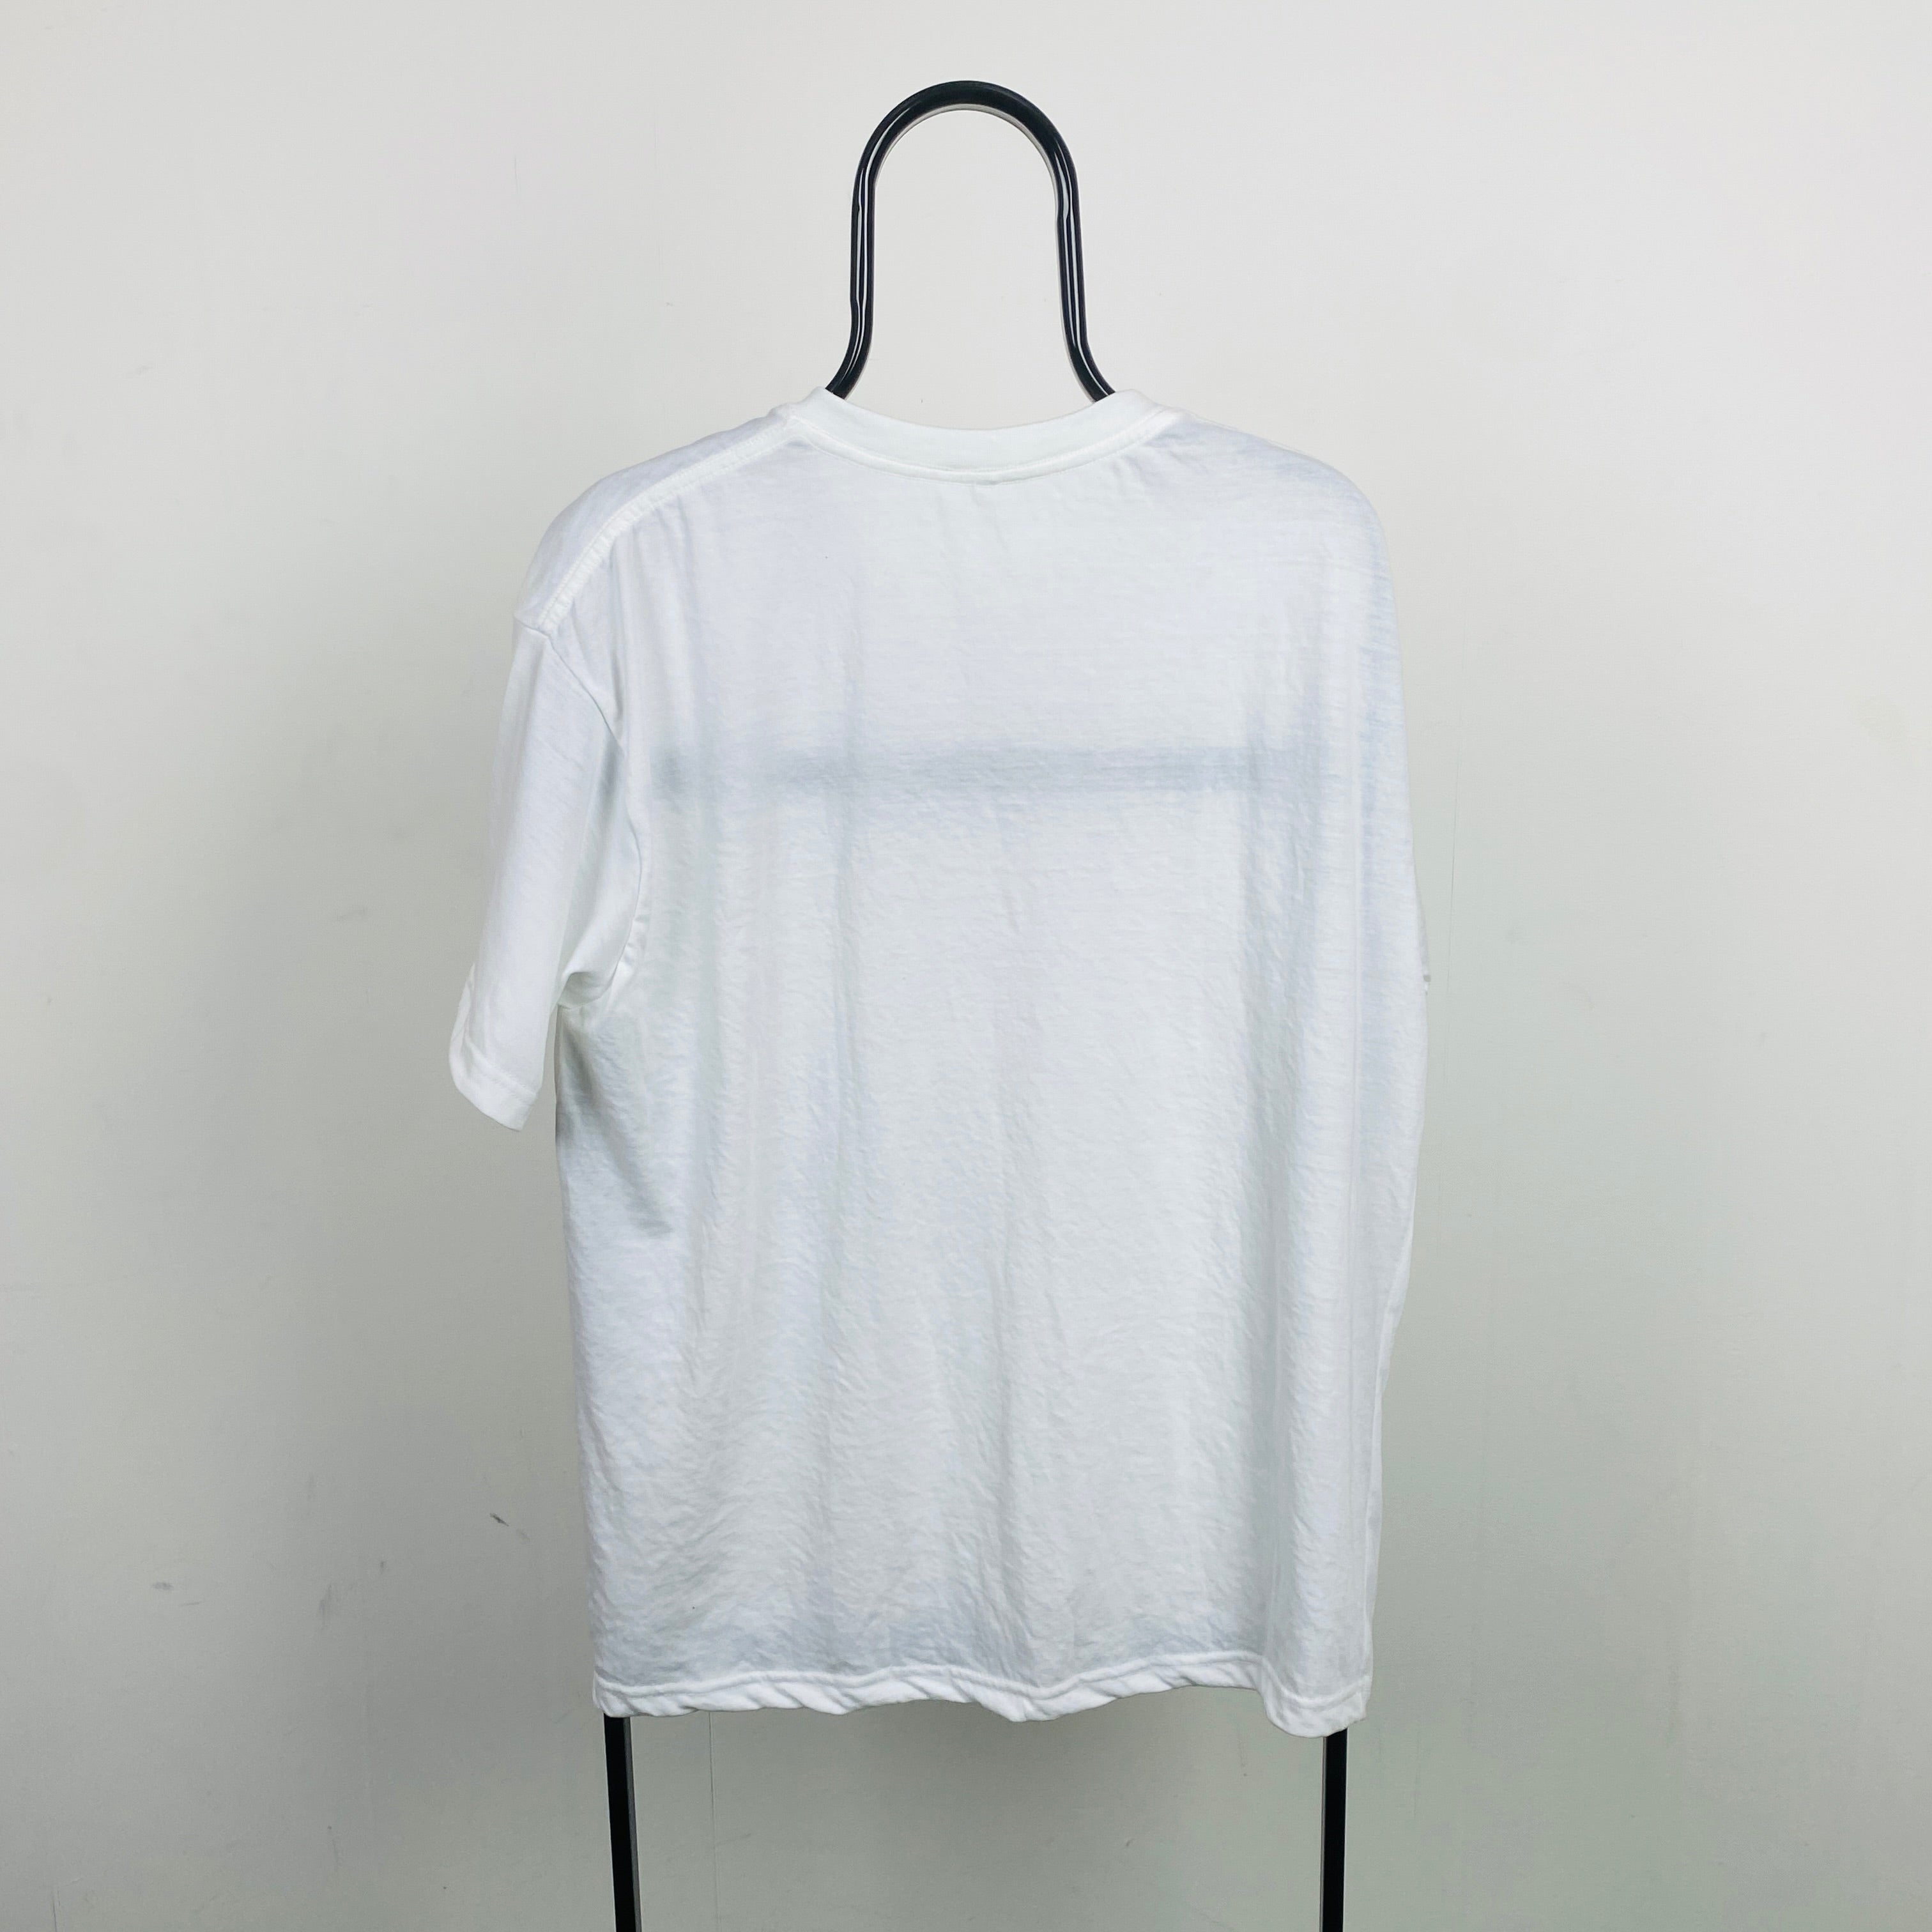 Retro 90s Chair T-Shirt White XL